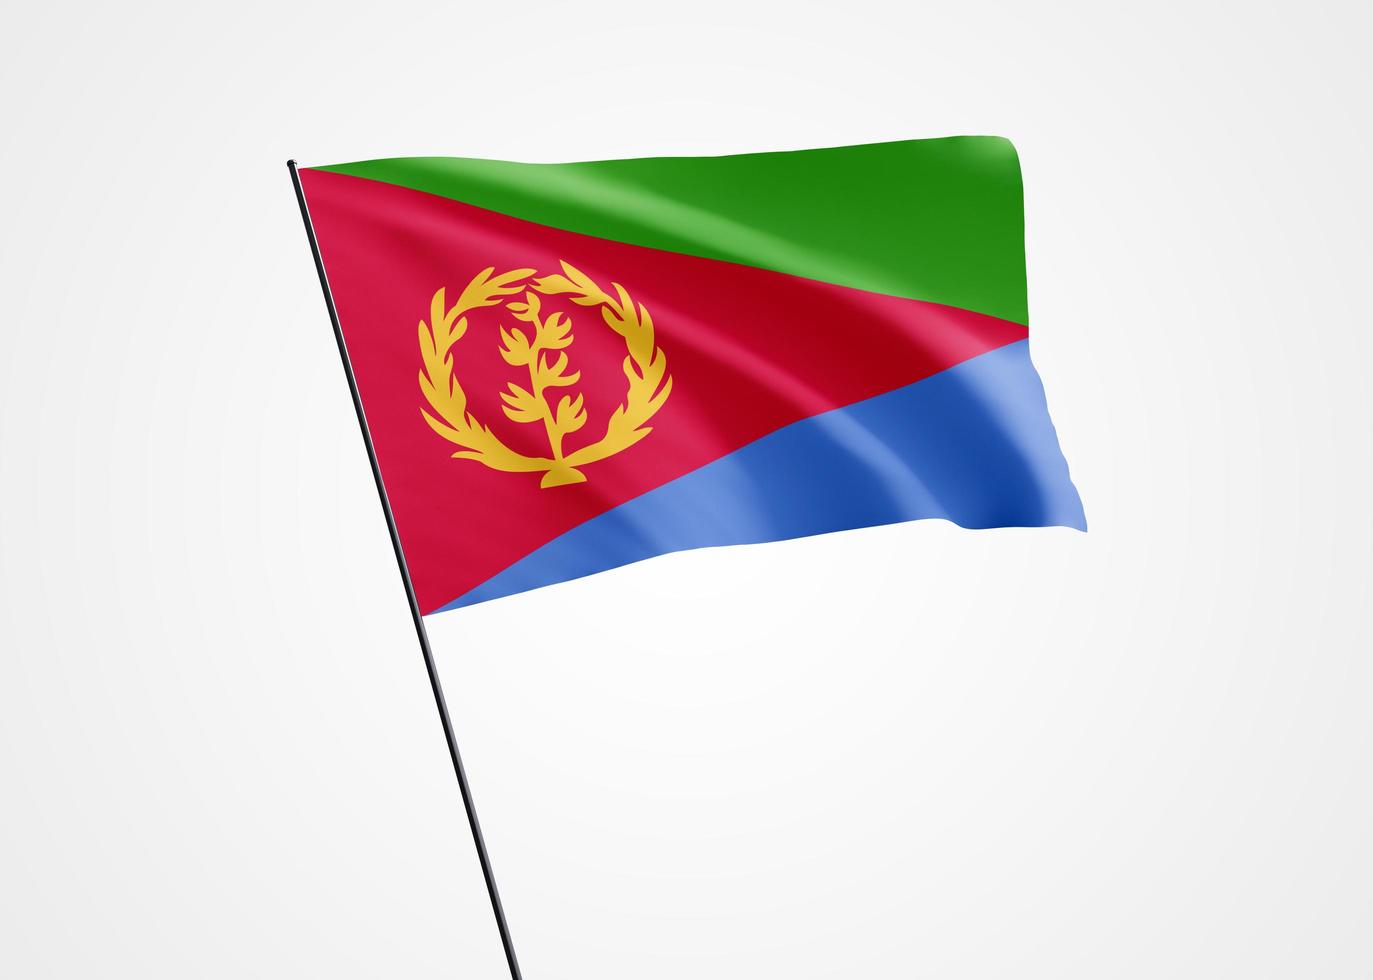 Eritrea vlag die hoog op de witte geïsoleerde achtergrond vliegt. 24 mei eritrea onafhankelijkheidsdag wereld nationale vlag collectie wereld nationale vlag collectie foto